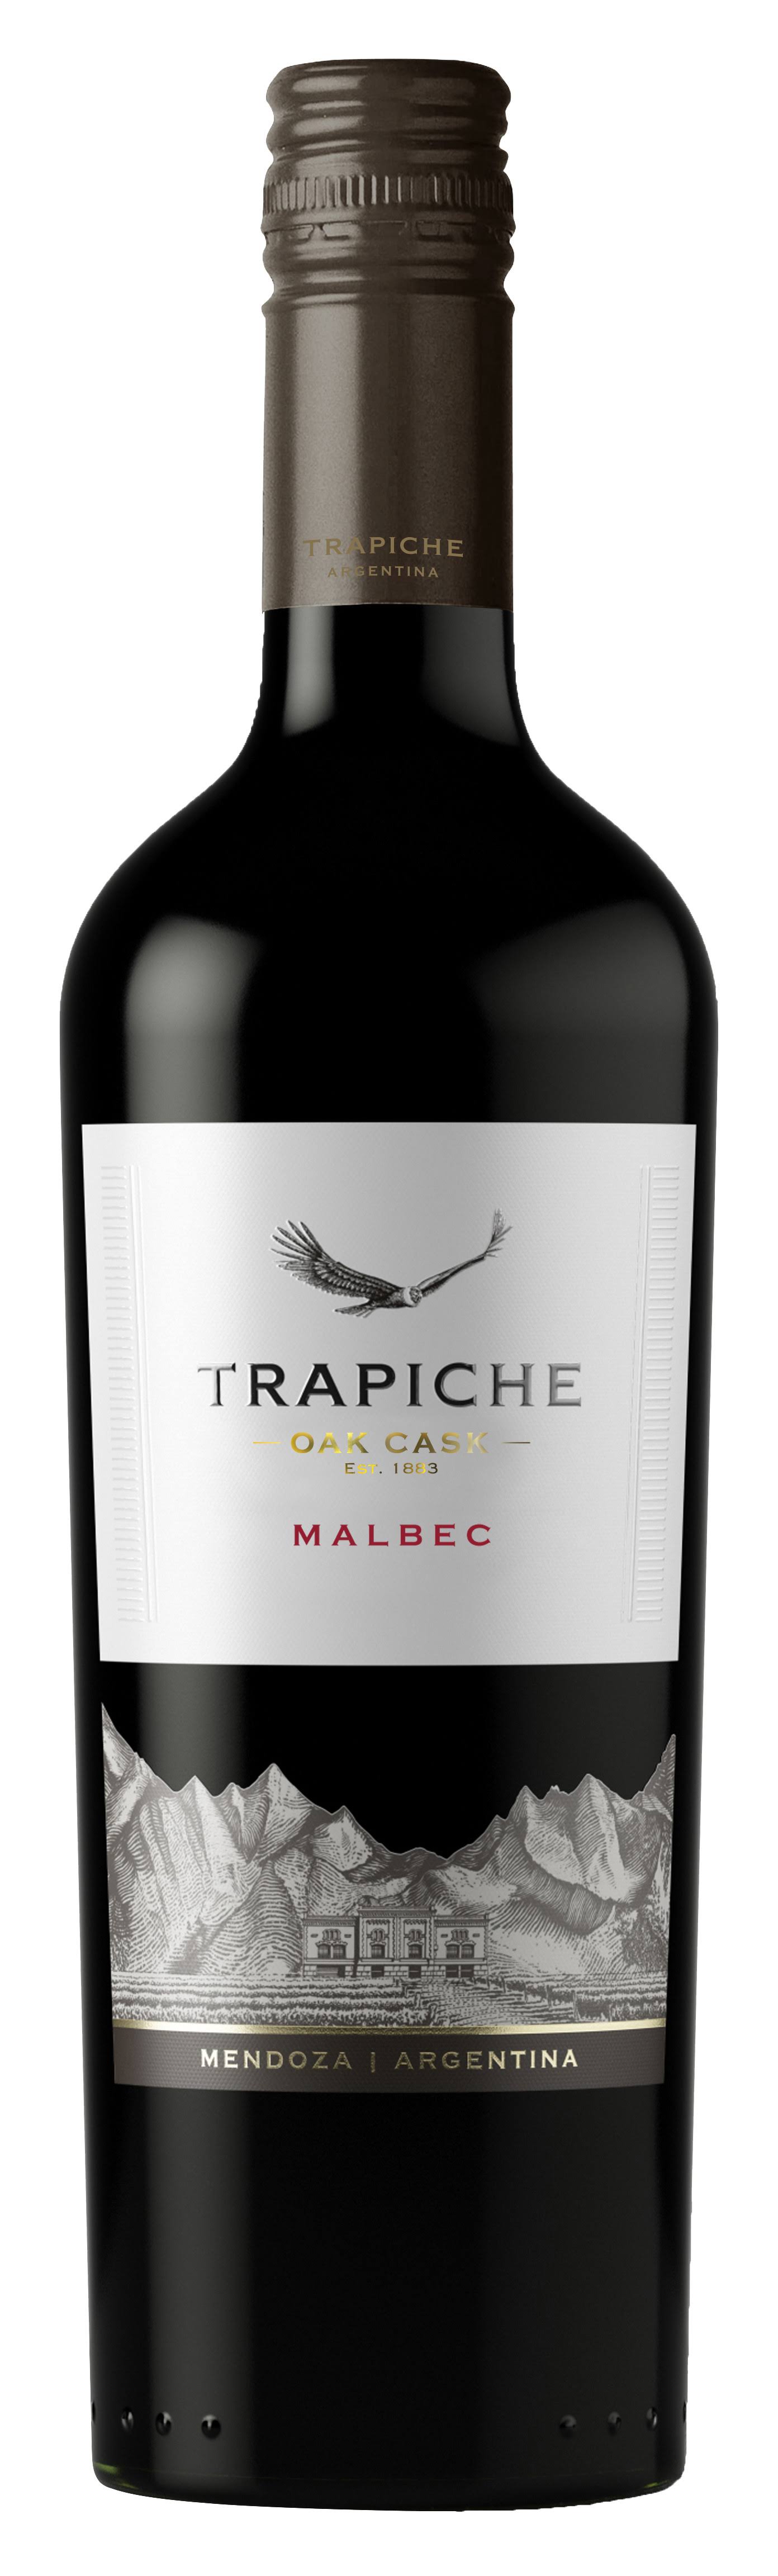 Trapiche Oak Cask Malbec - 750ml